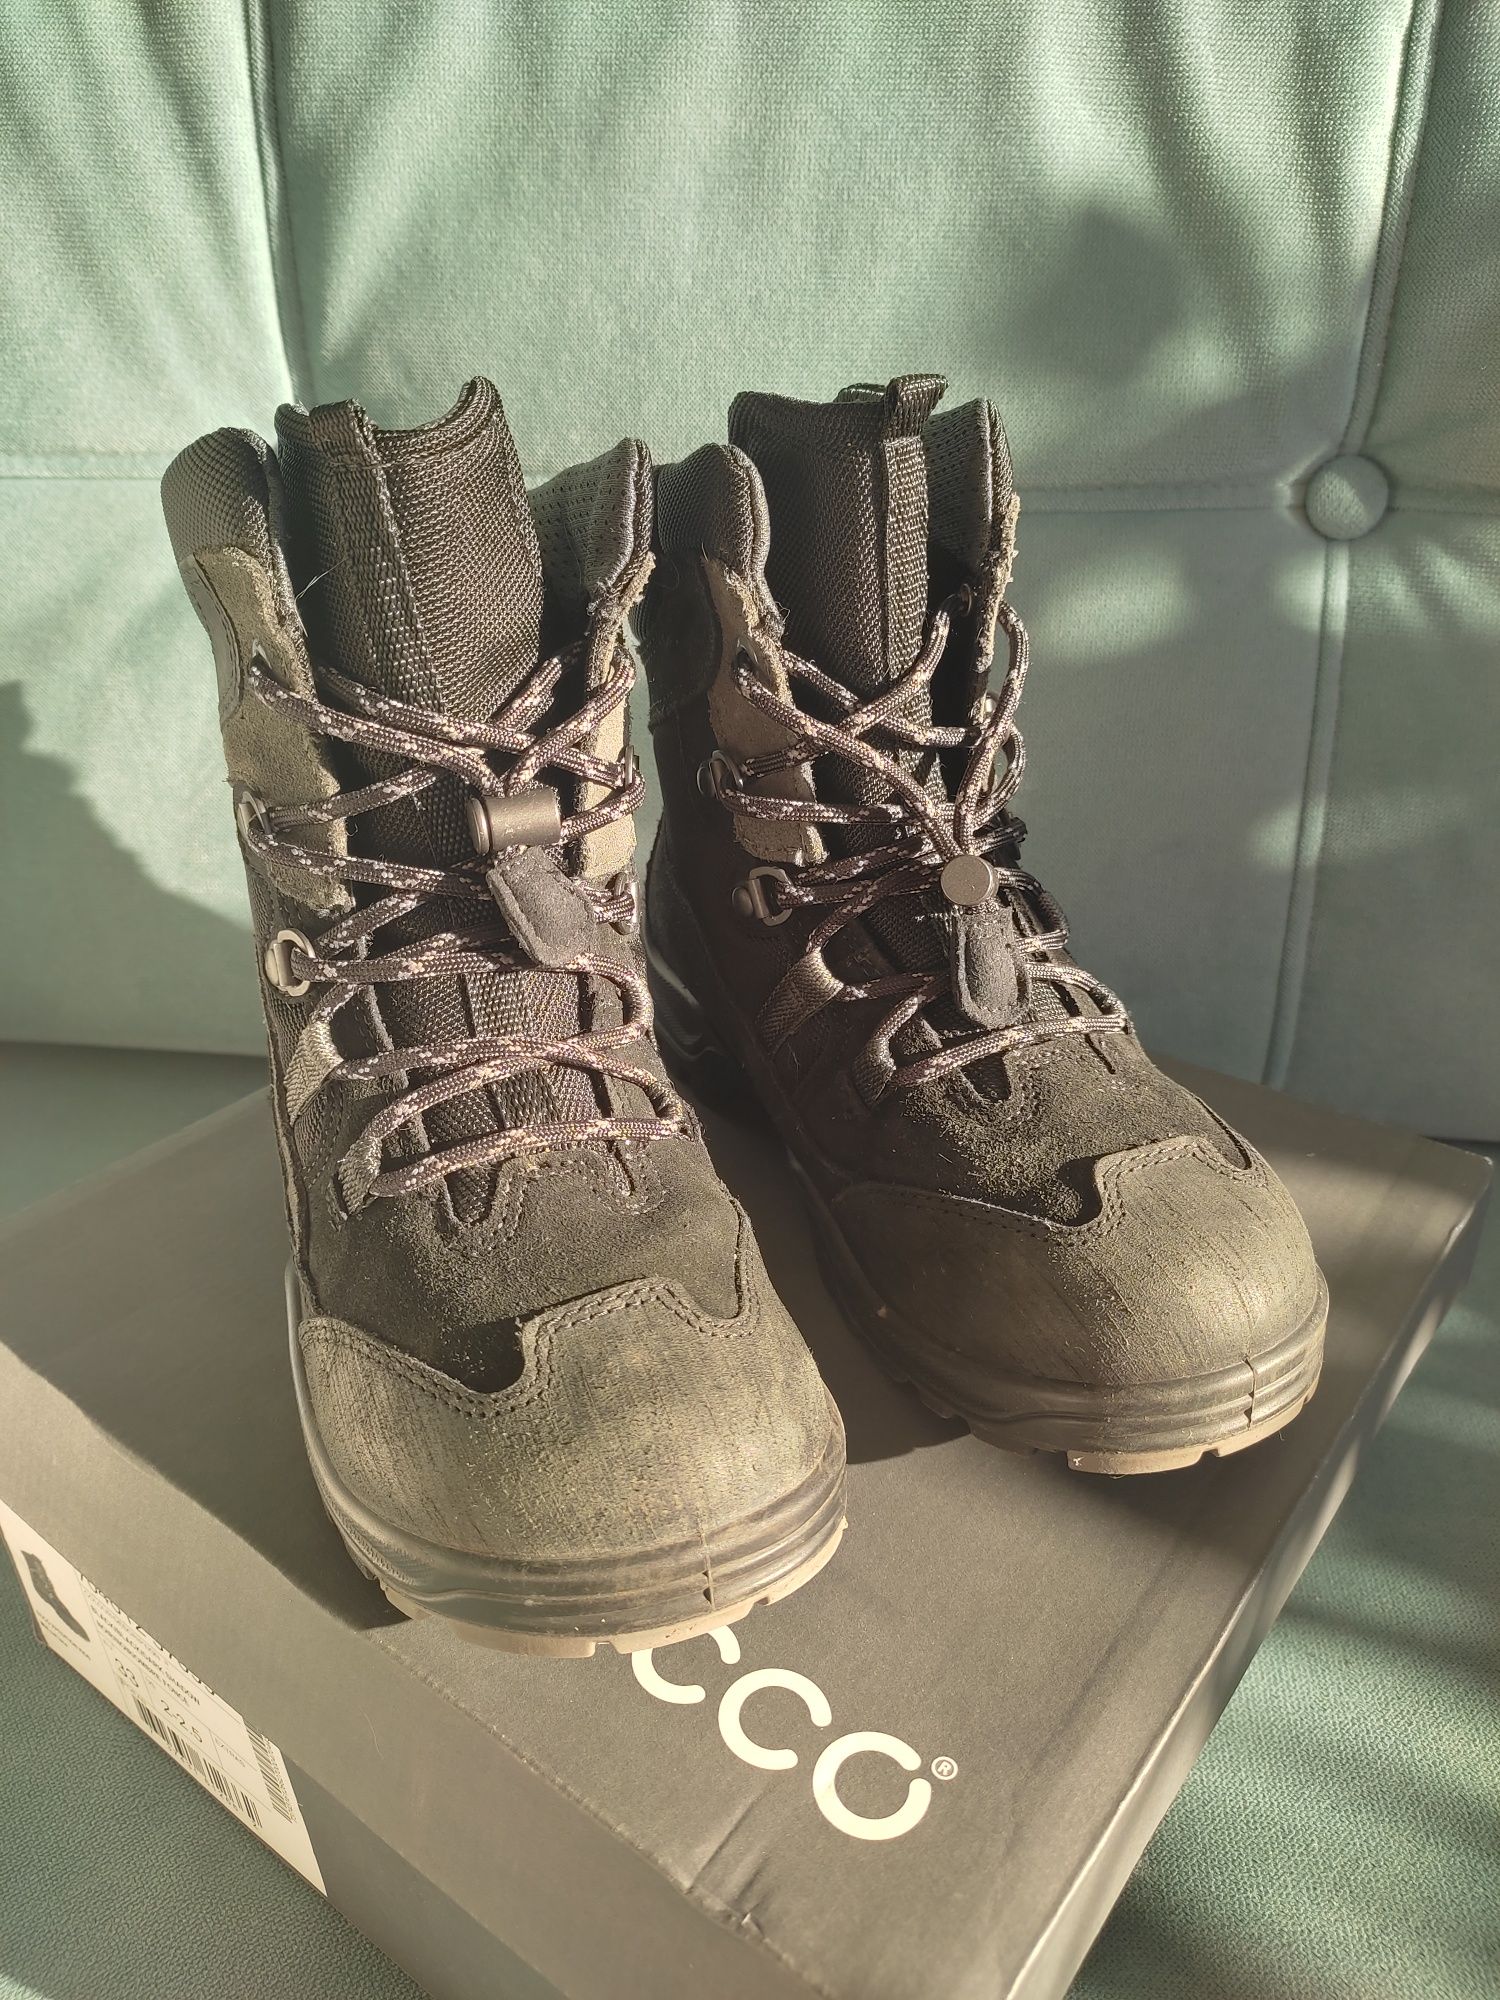 Buty zimowe śniegowce Ecco Expedition dla chłopca rozmiar 33 Gore-Tex